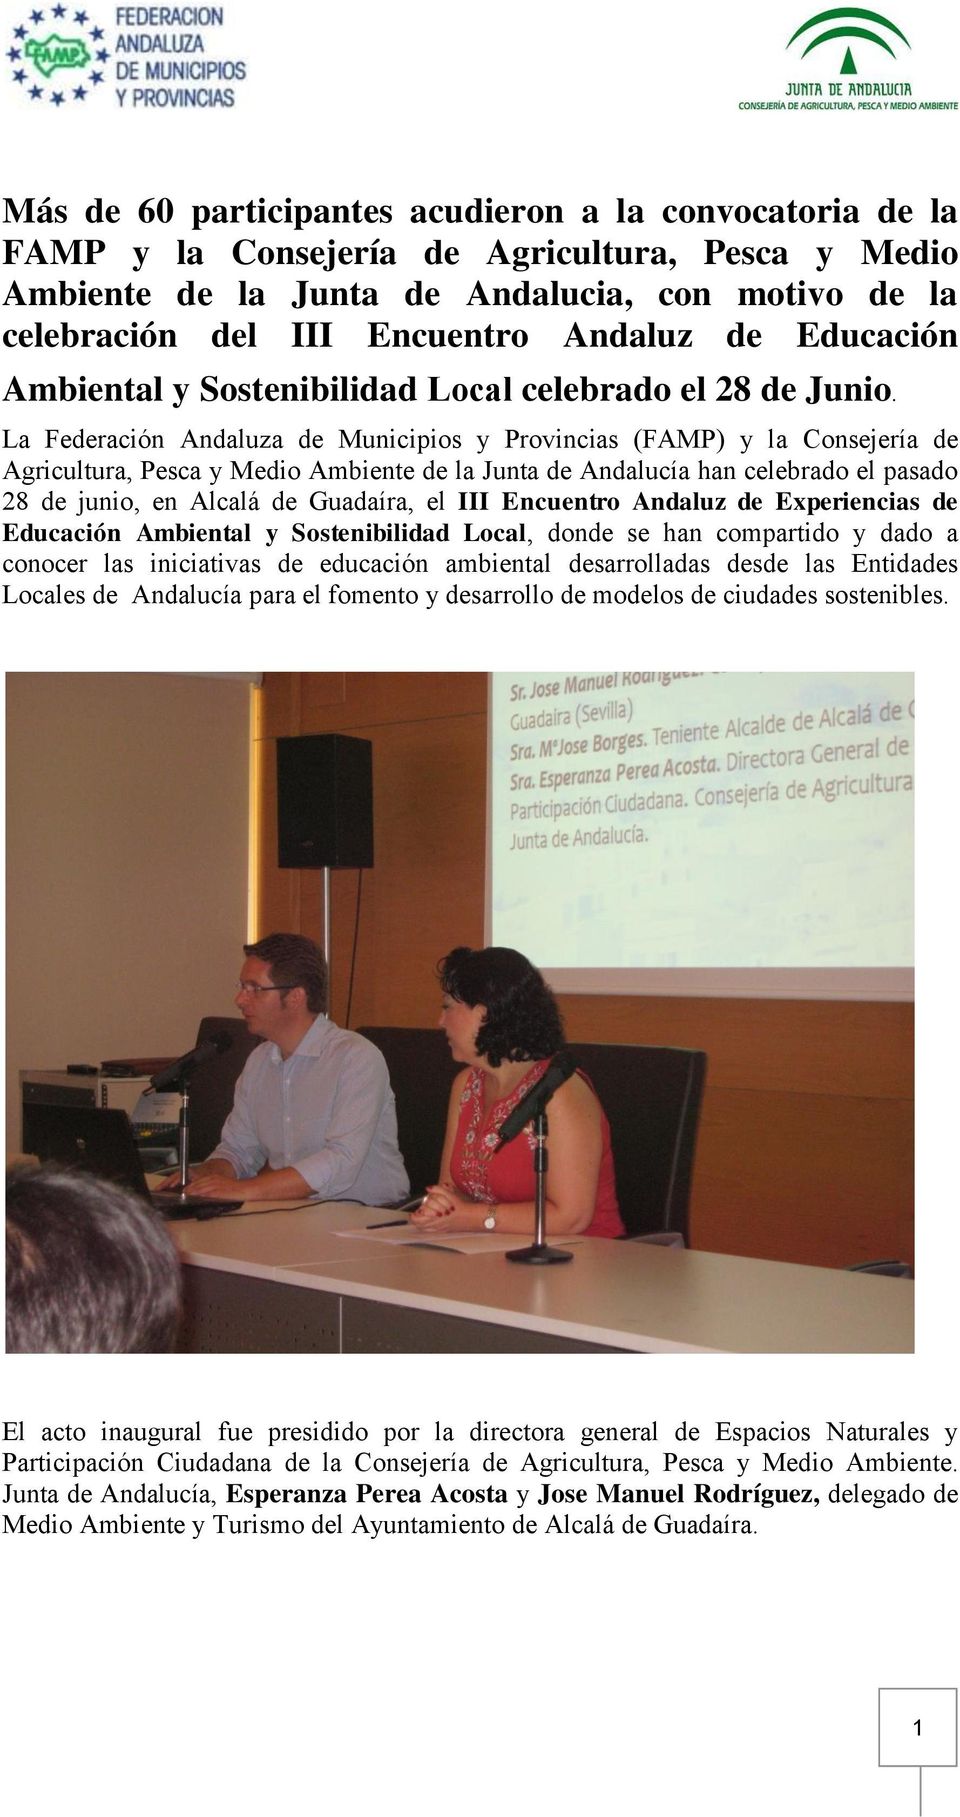 La Federación Andaluza de Municipios y Provincias (FAMP) y la Consejería de Agricultura, Pesca y Medio Ambiente de la Junta de Andalucía han celebrado el pasado 28 de junio, en Alcalá de Guadaíra, el